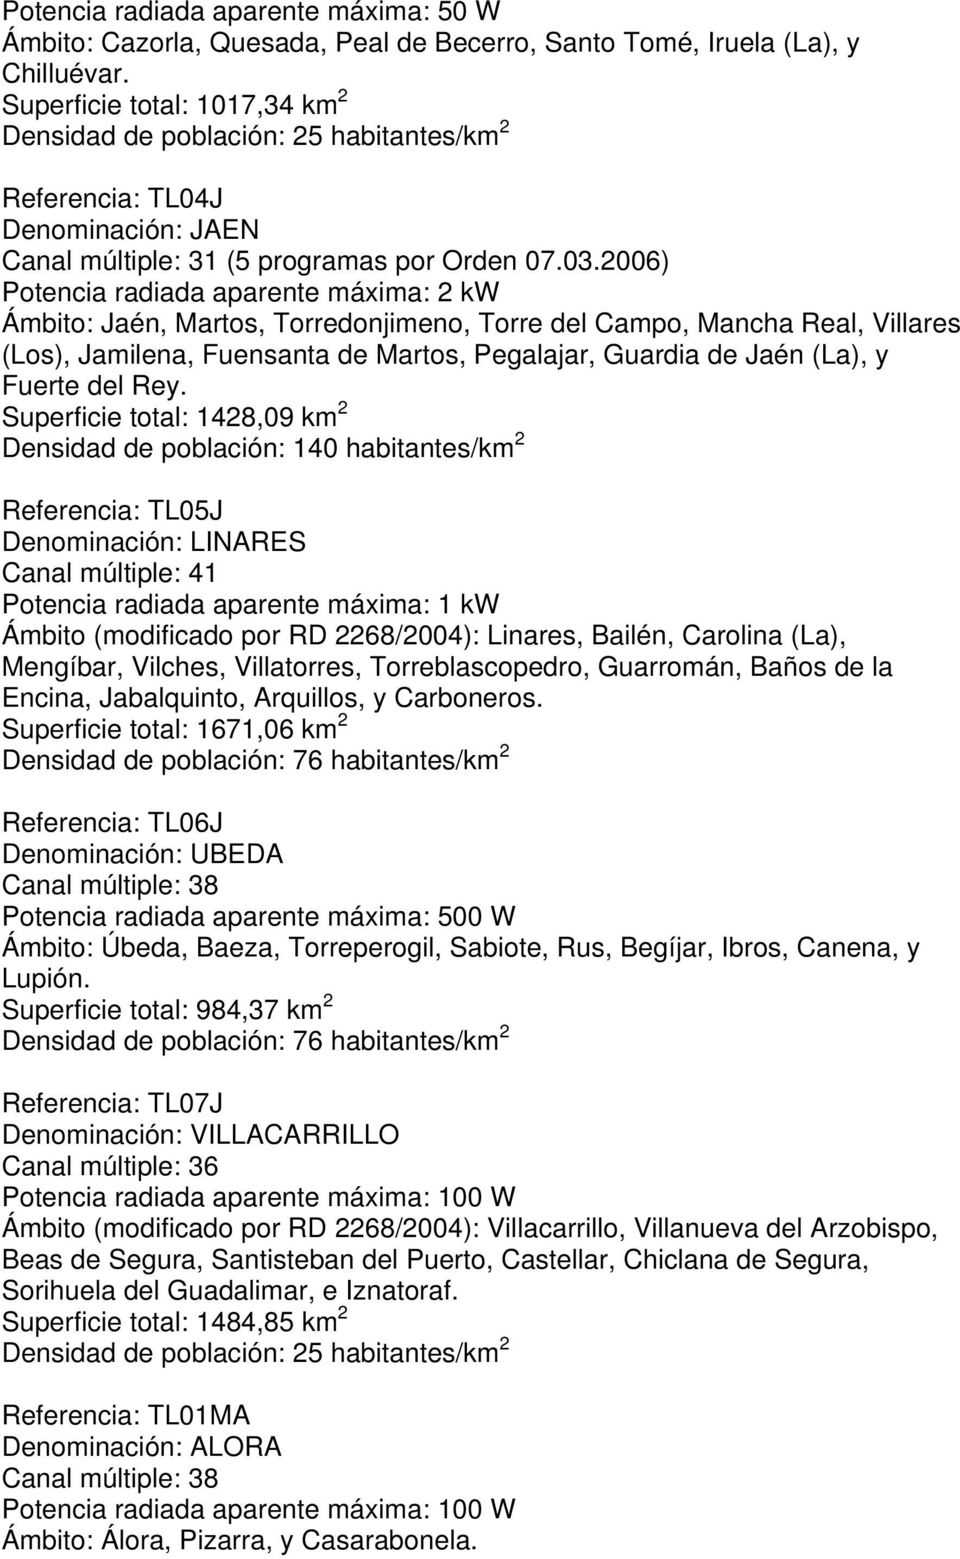 2006) Ámbito: Jaén, Martos, Torredonjimeno, Torre del Campo, Mancha Real, Villares (Los), Jamilena, Fuensanta de Martos, Pegalajar, Guardia de Jaén (La), y Fuerte del Rey.